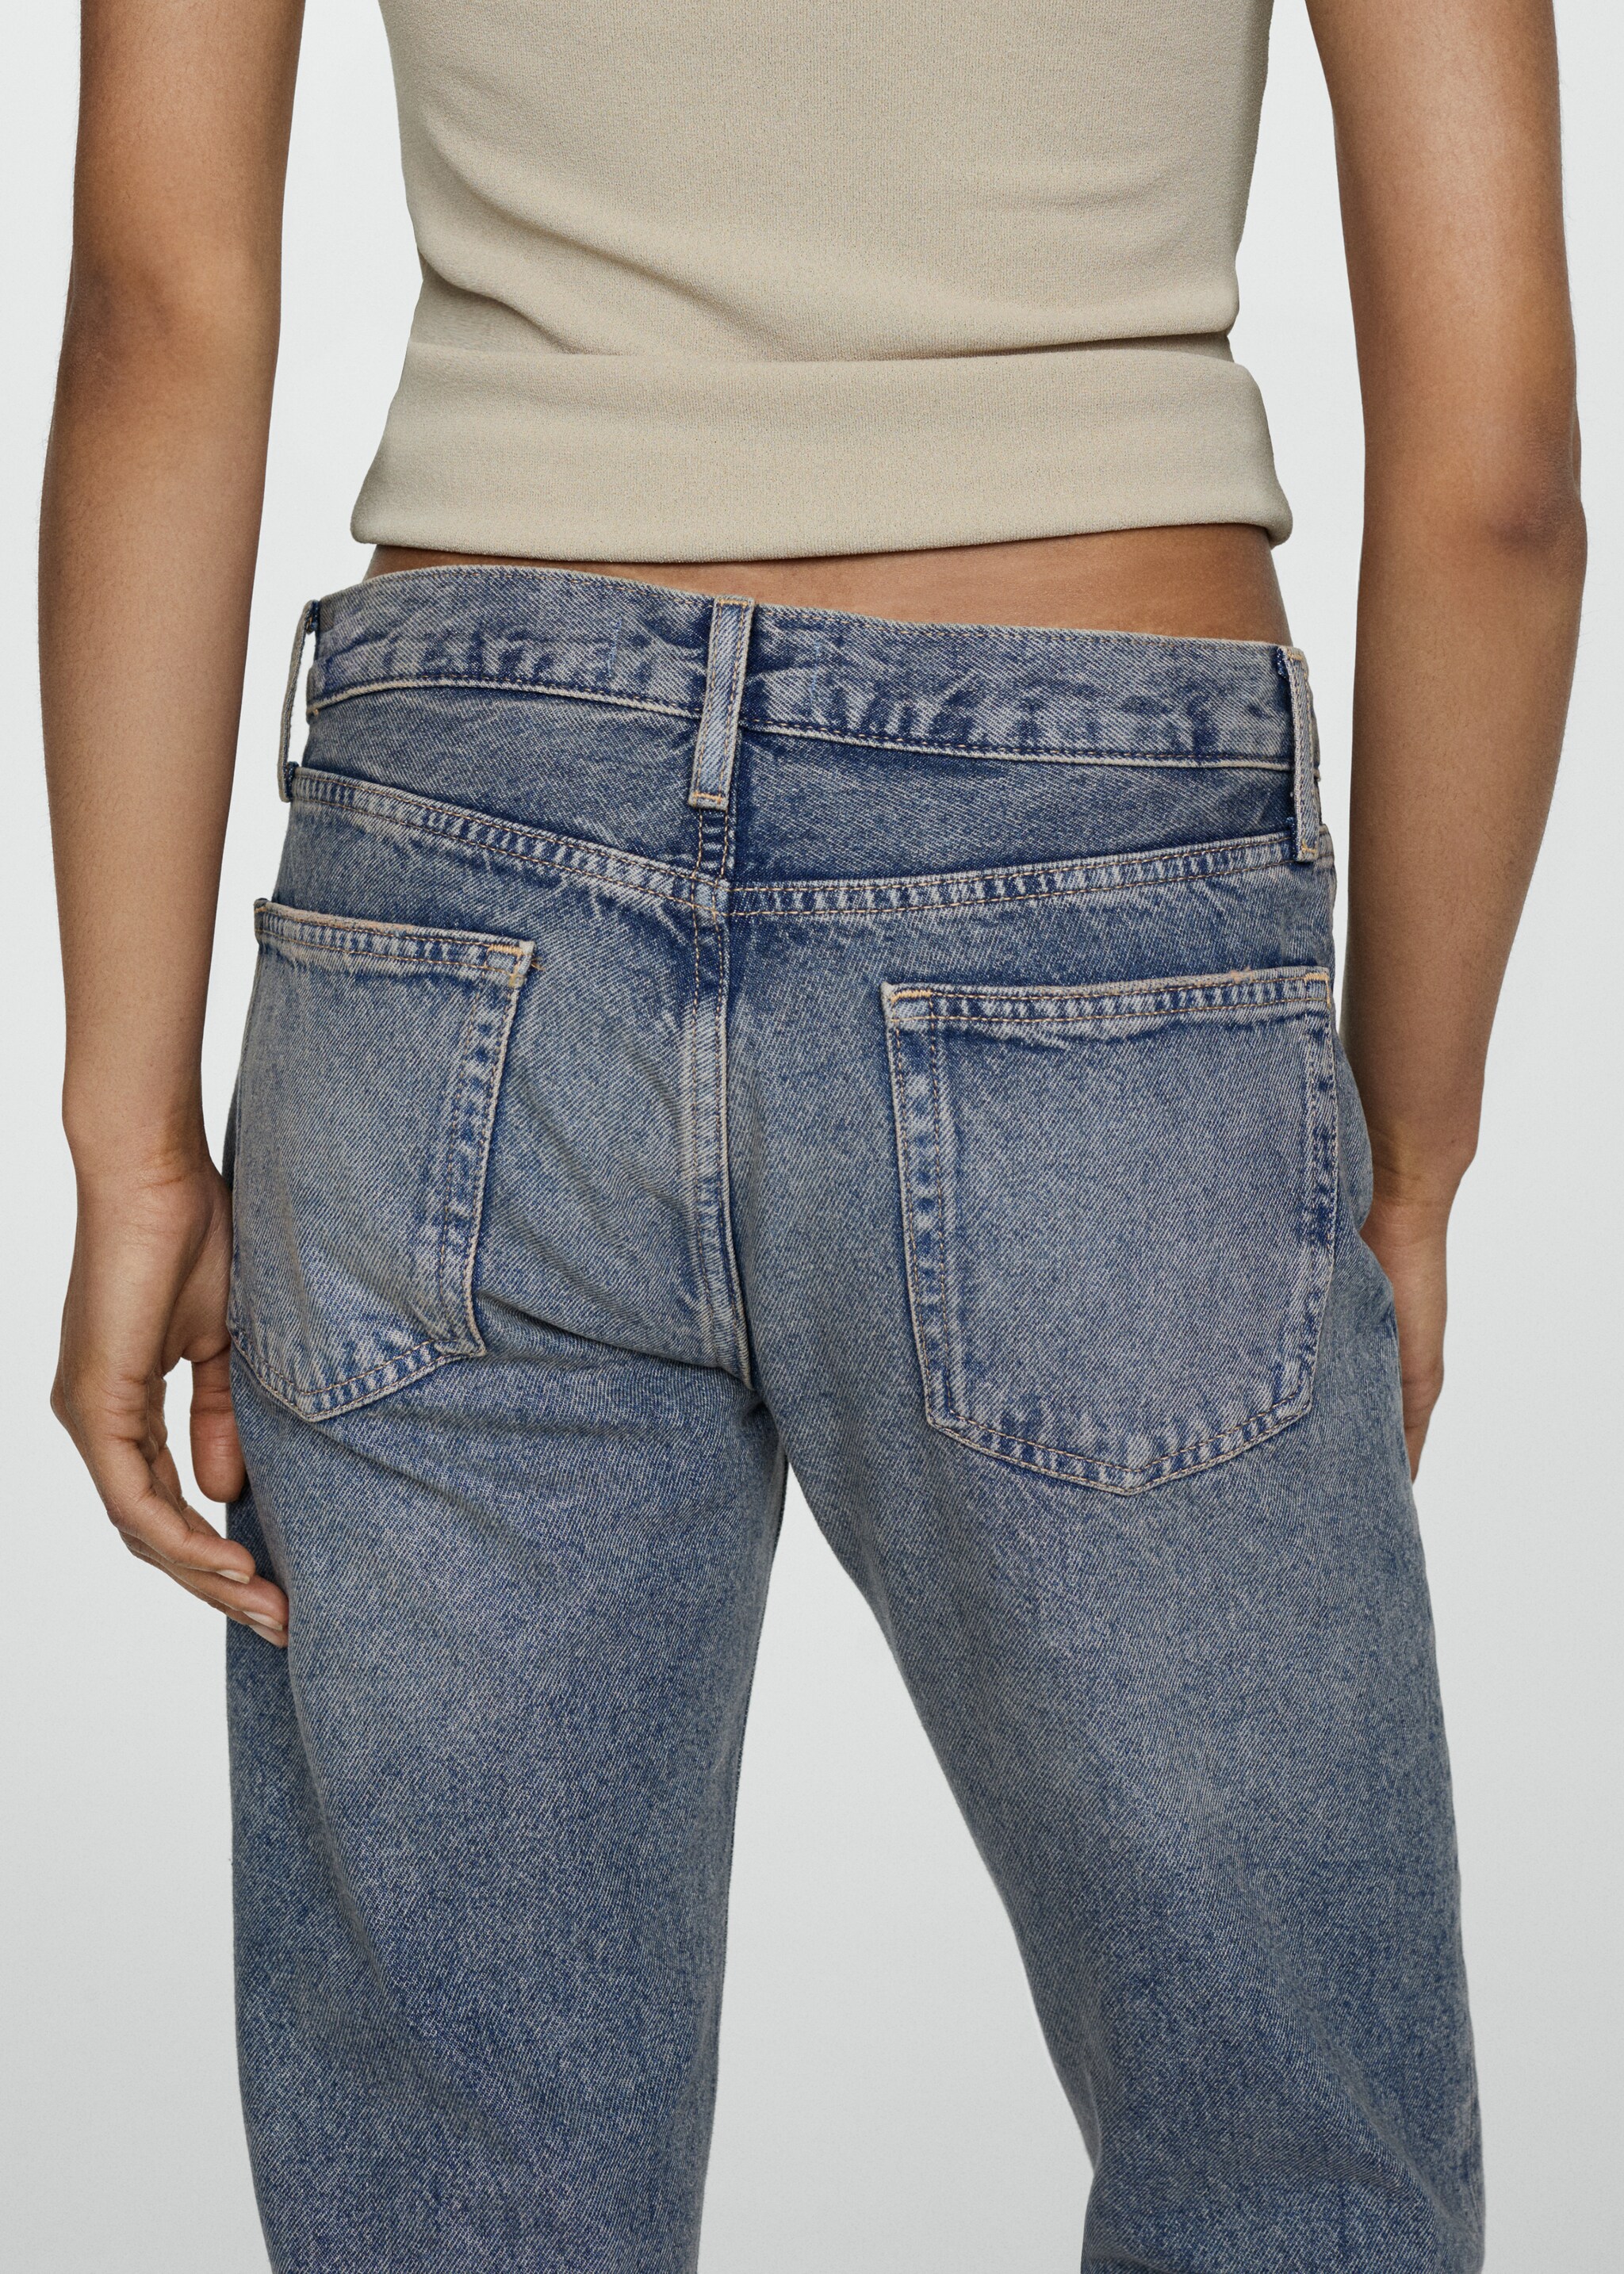 Нарочно рваные джинсы girlfriend с низкой талией - Деталь изделия 1